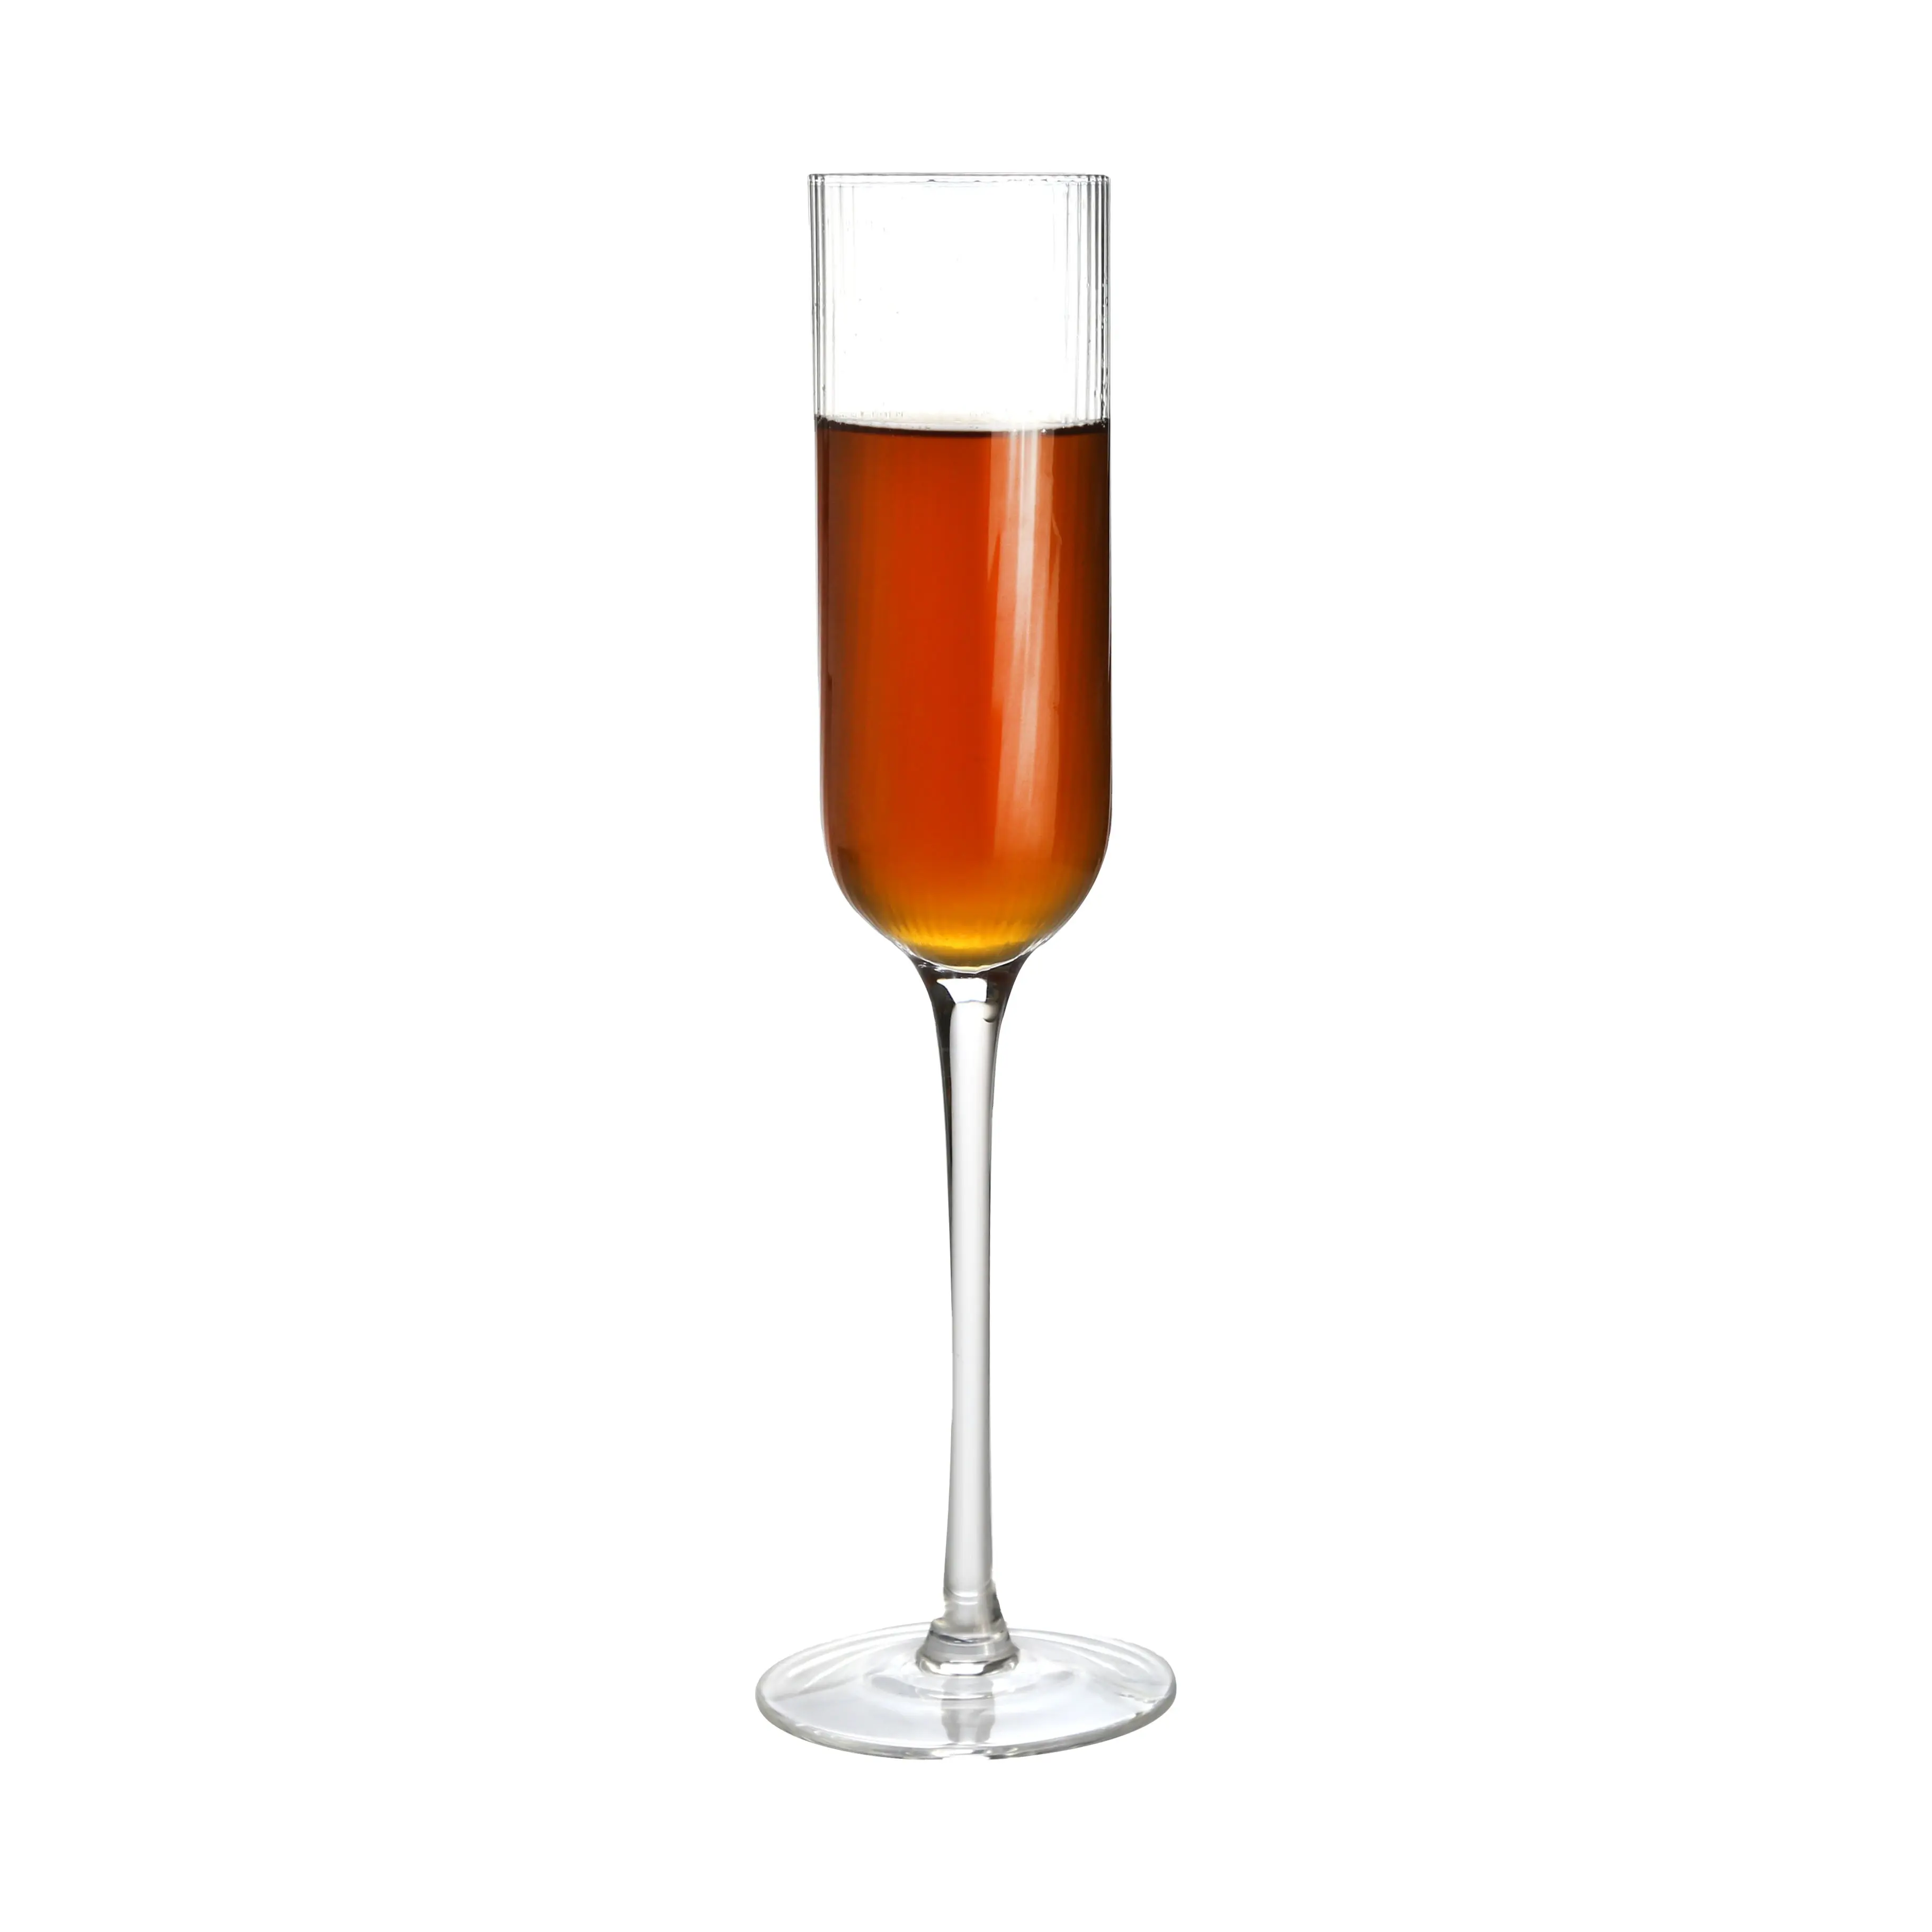 Großhandel Custom ize Champagner Flöten, -KOTTO Champagner Glas Modern & Elegant Geschenk für Hochzeit Weihnachten, 100% bleifreier Kristall